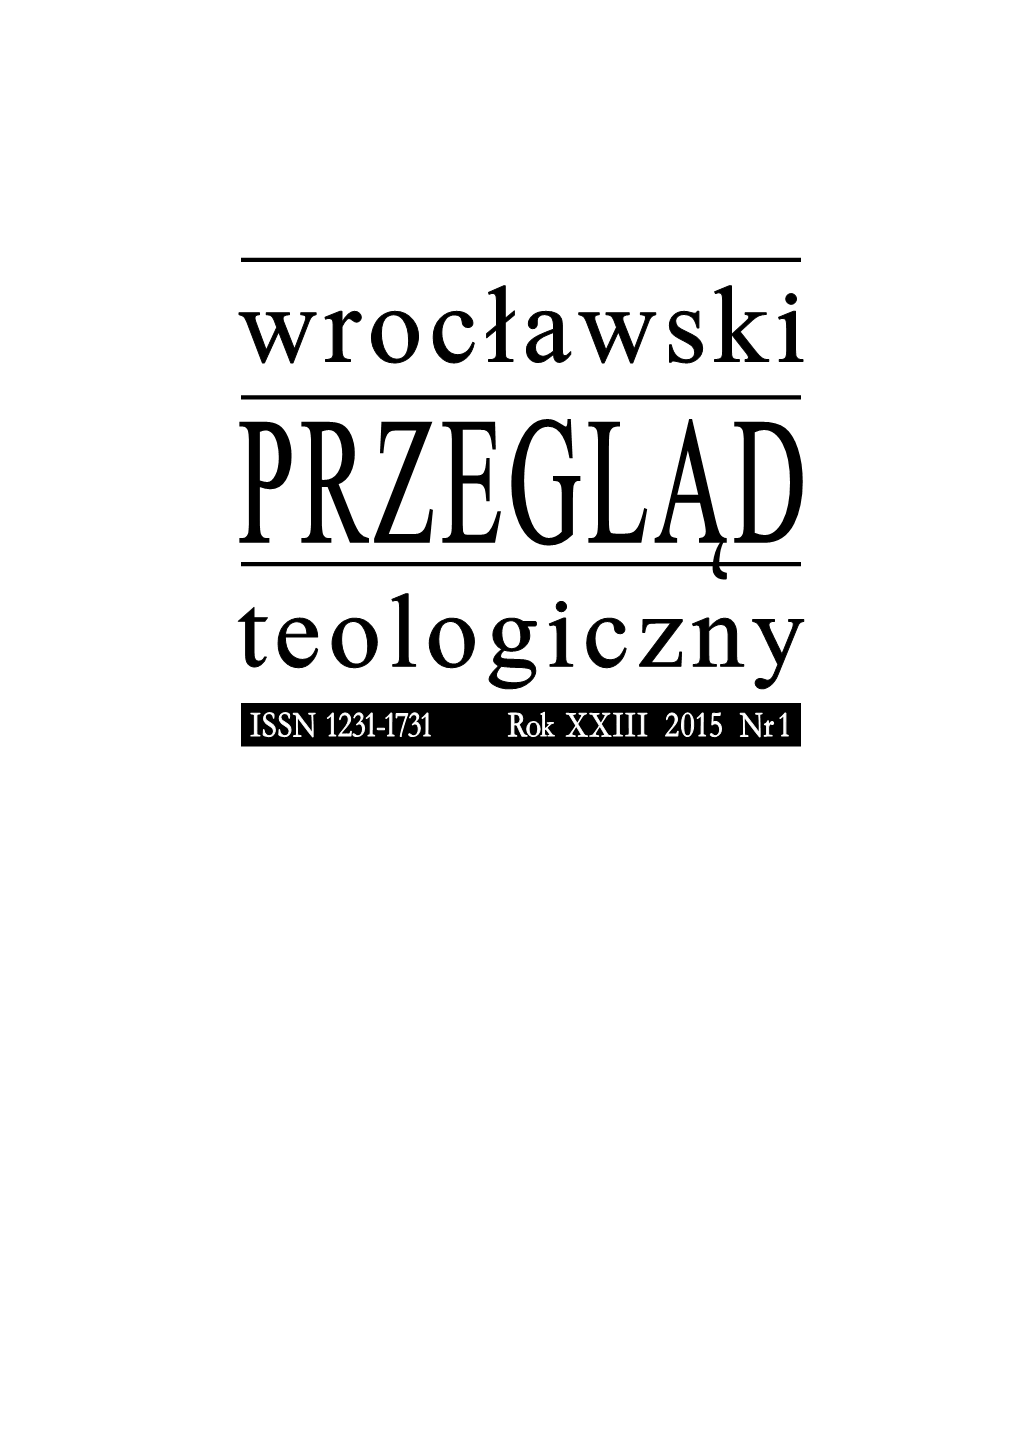 Wrocławski Przegląd Teologiczny, Nr 1/2015